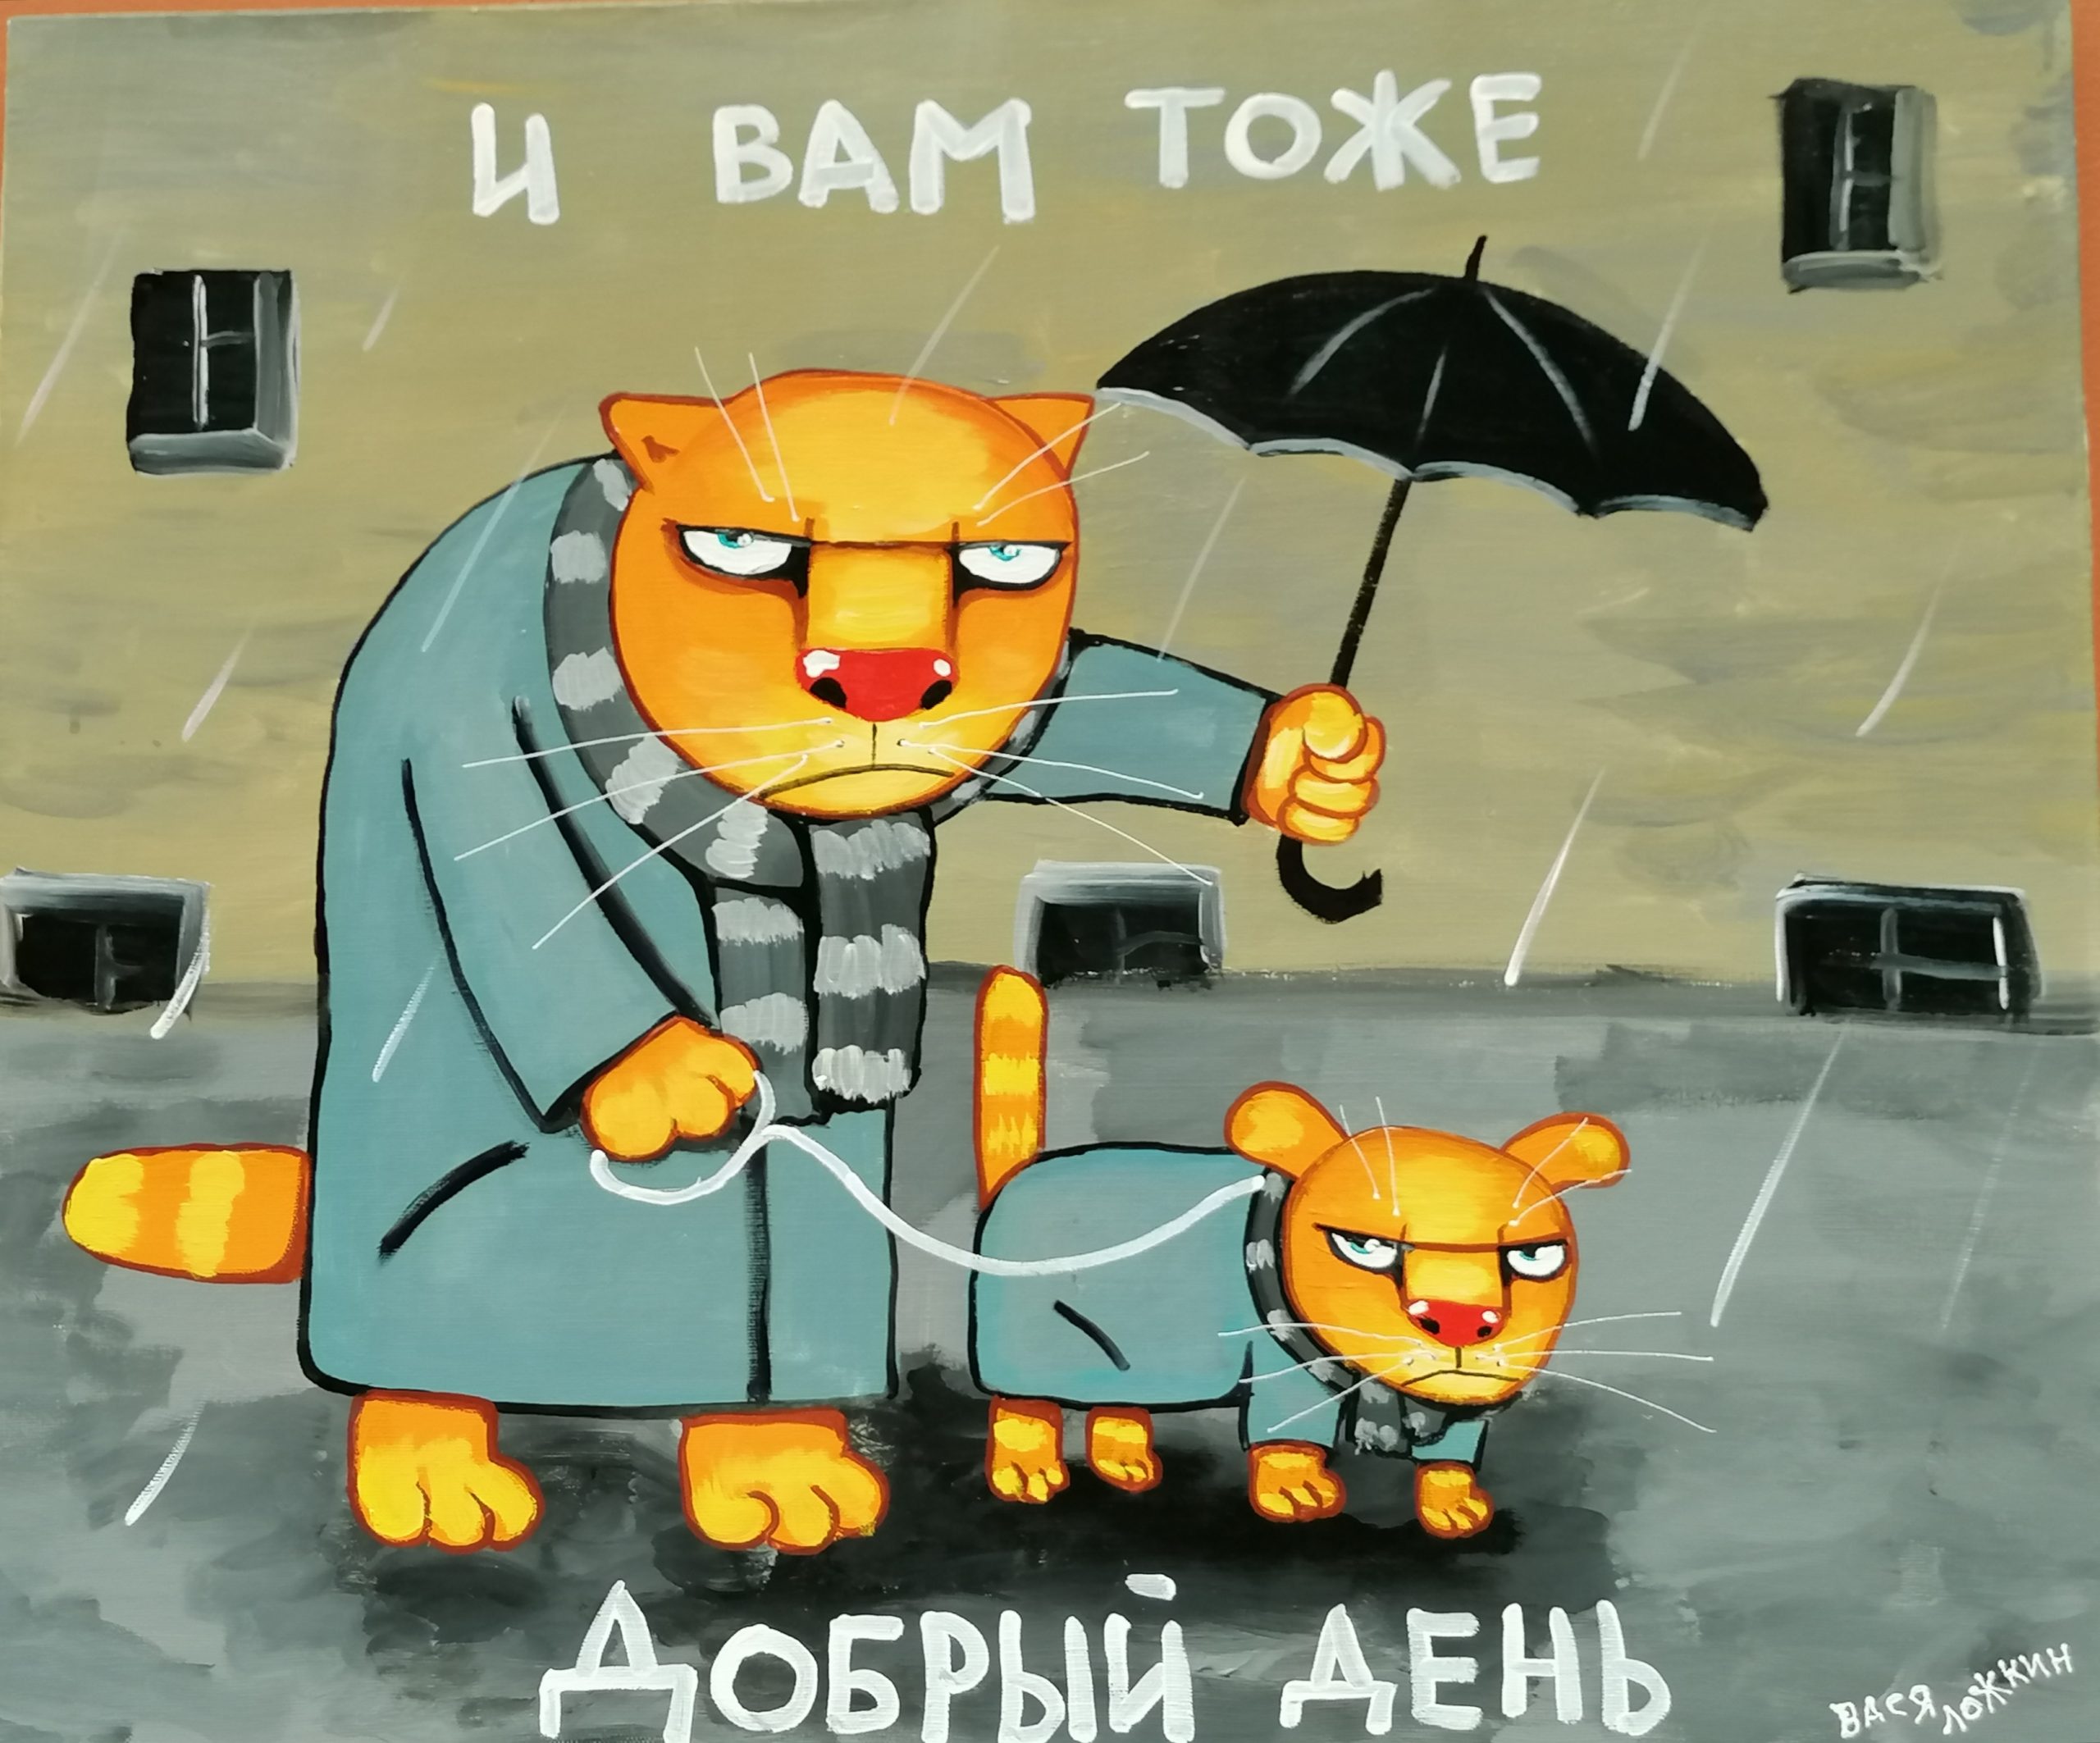 культурный кот Петербурга